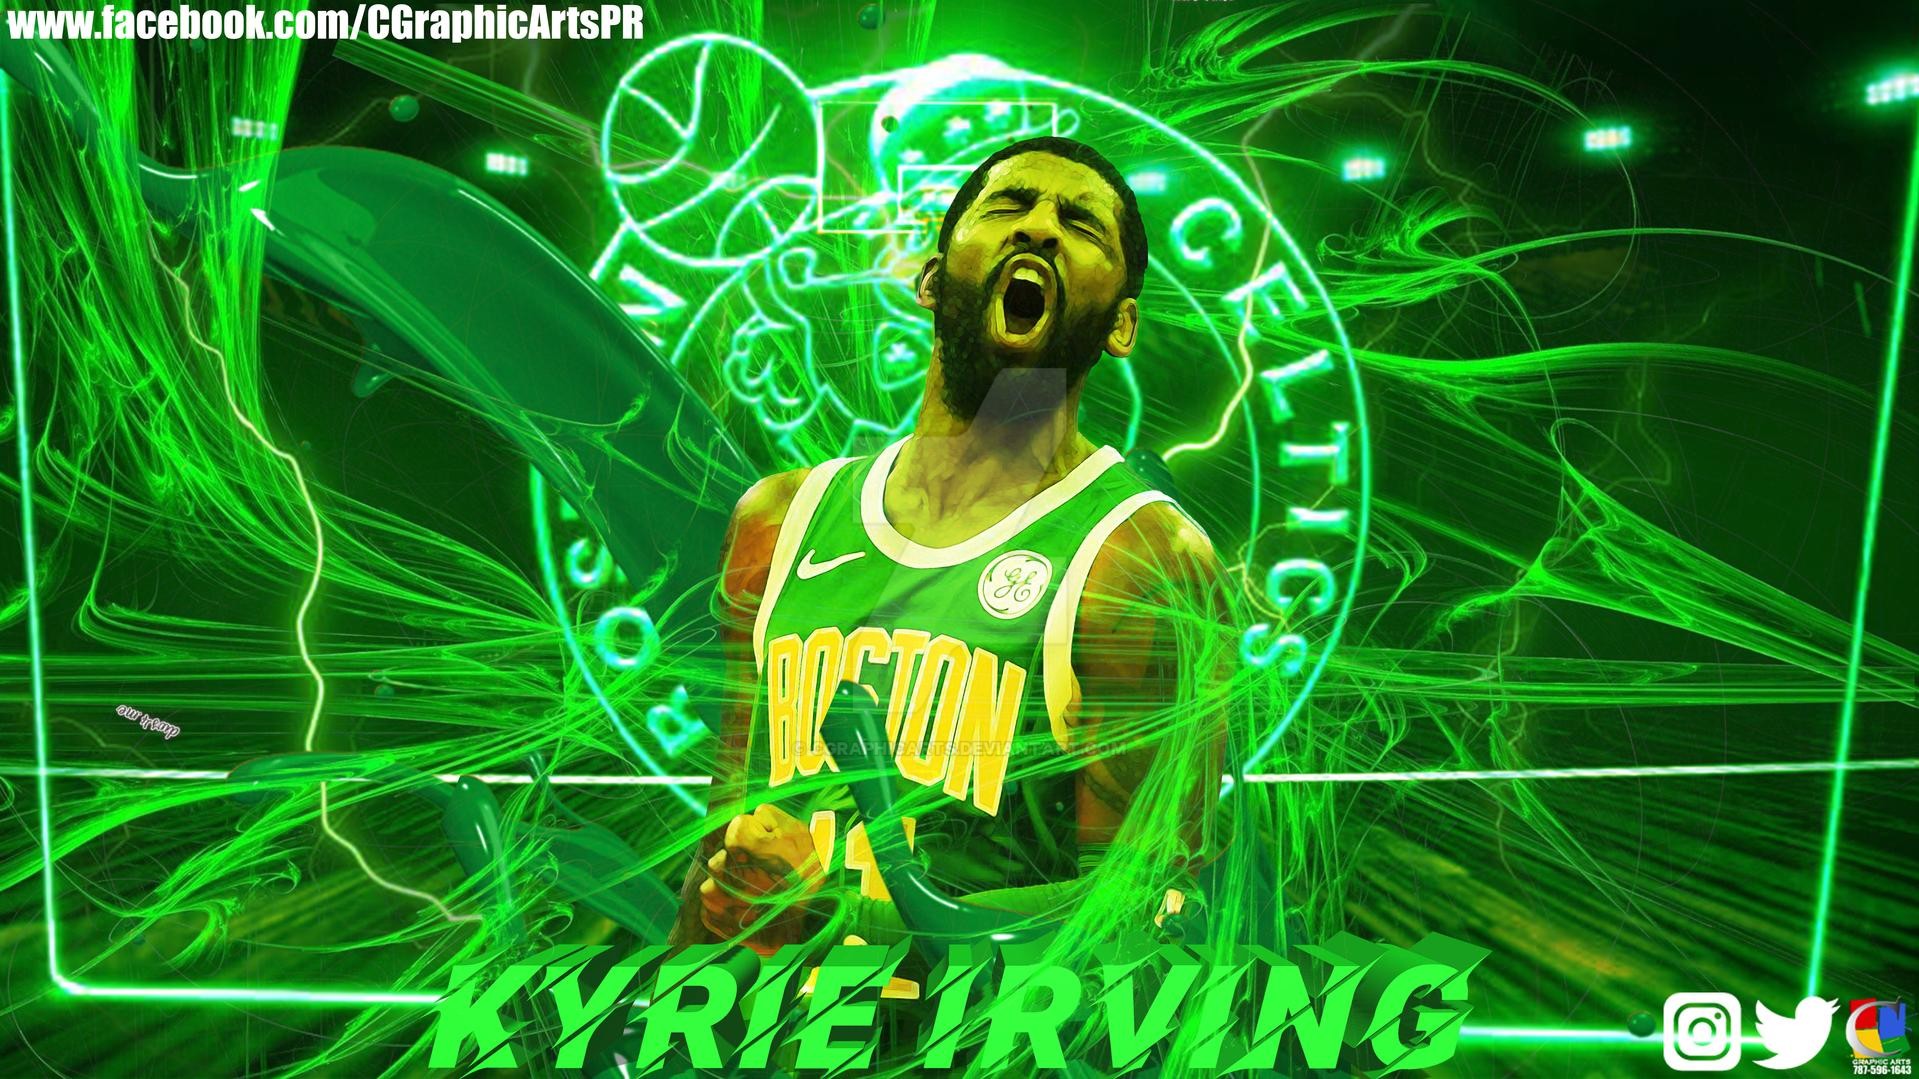 Boston Celtics Kyrie Irving - HD Wallpaper 